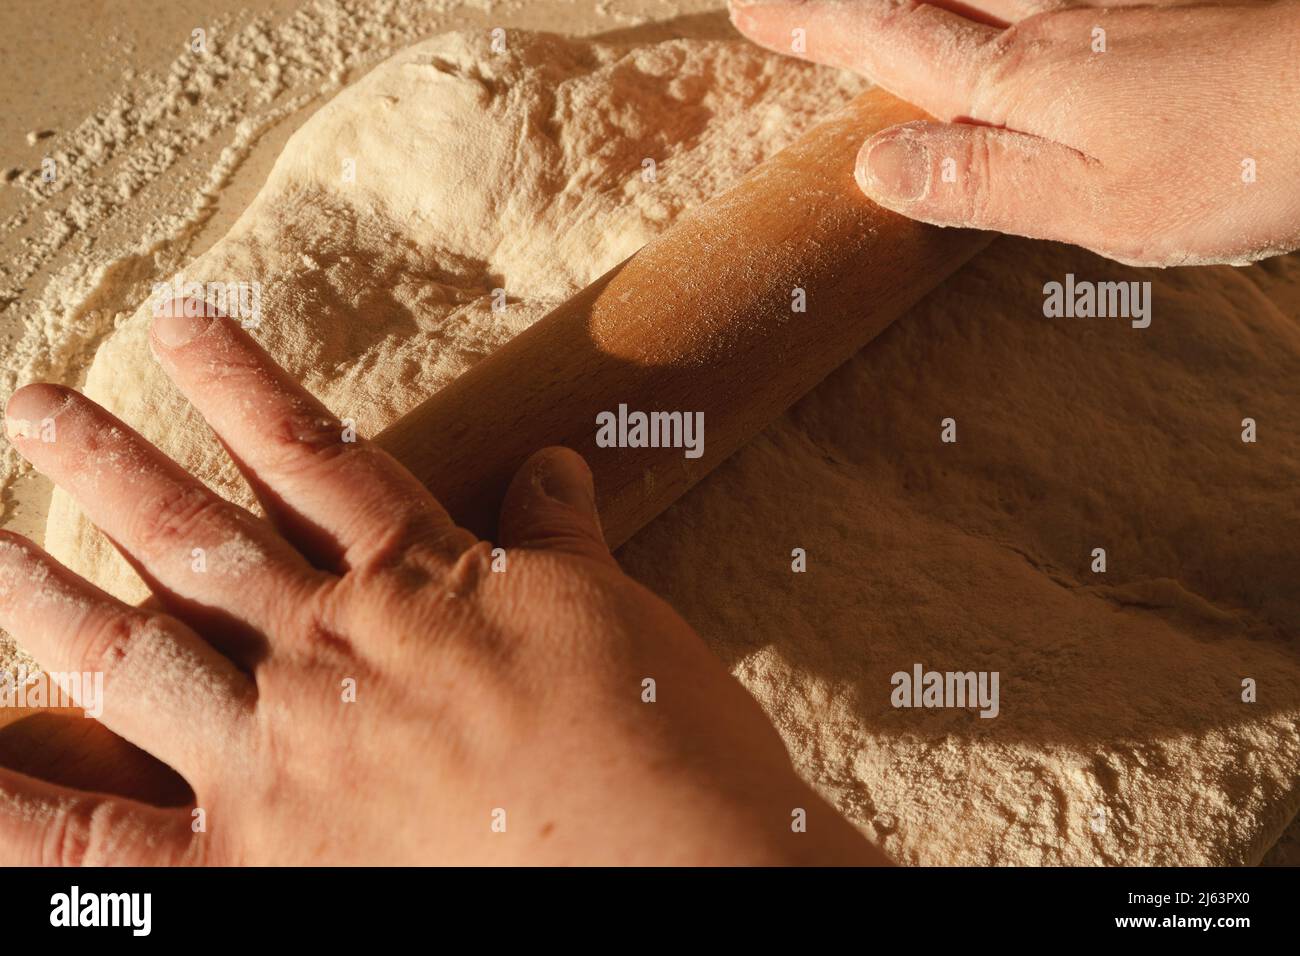 Preparare l'impasto per il pane, impastare l'impasto con un matterello sul tavolo. Foto Stock